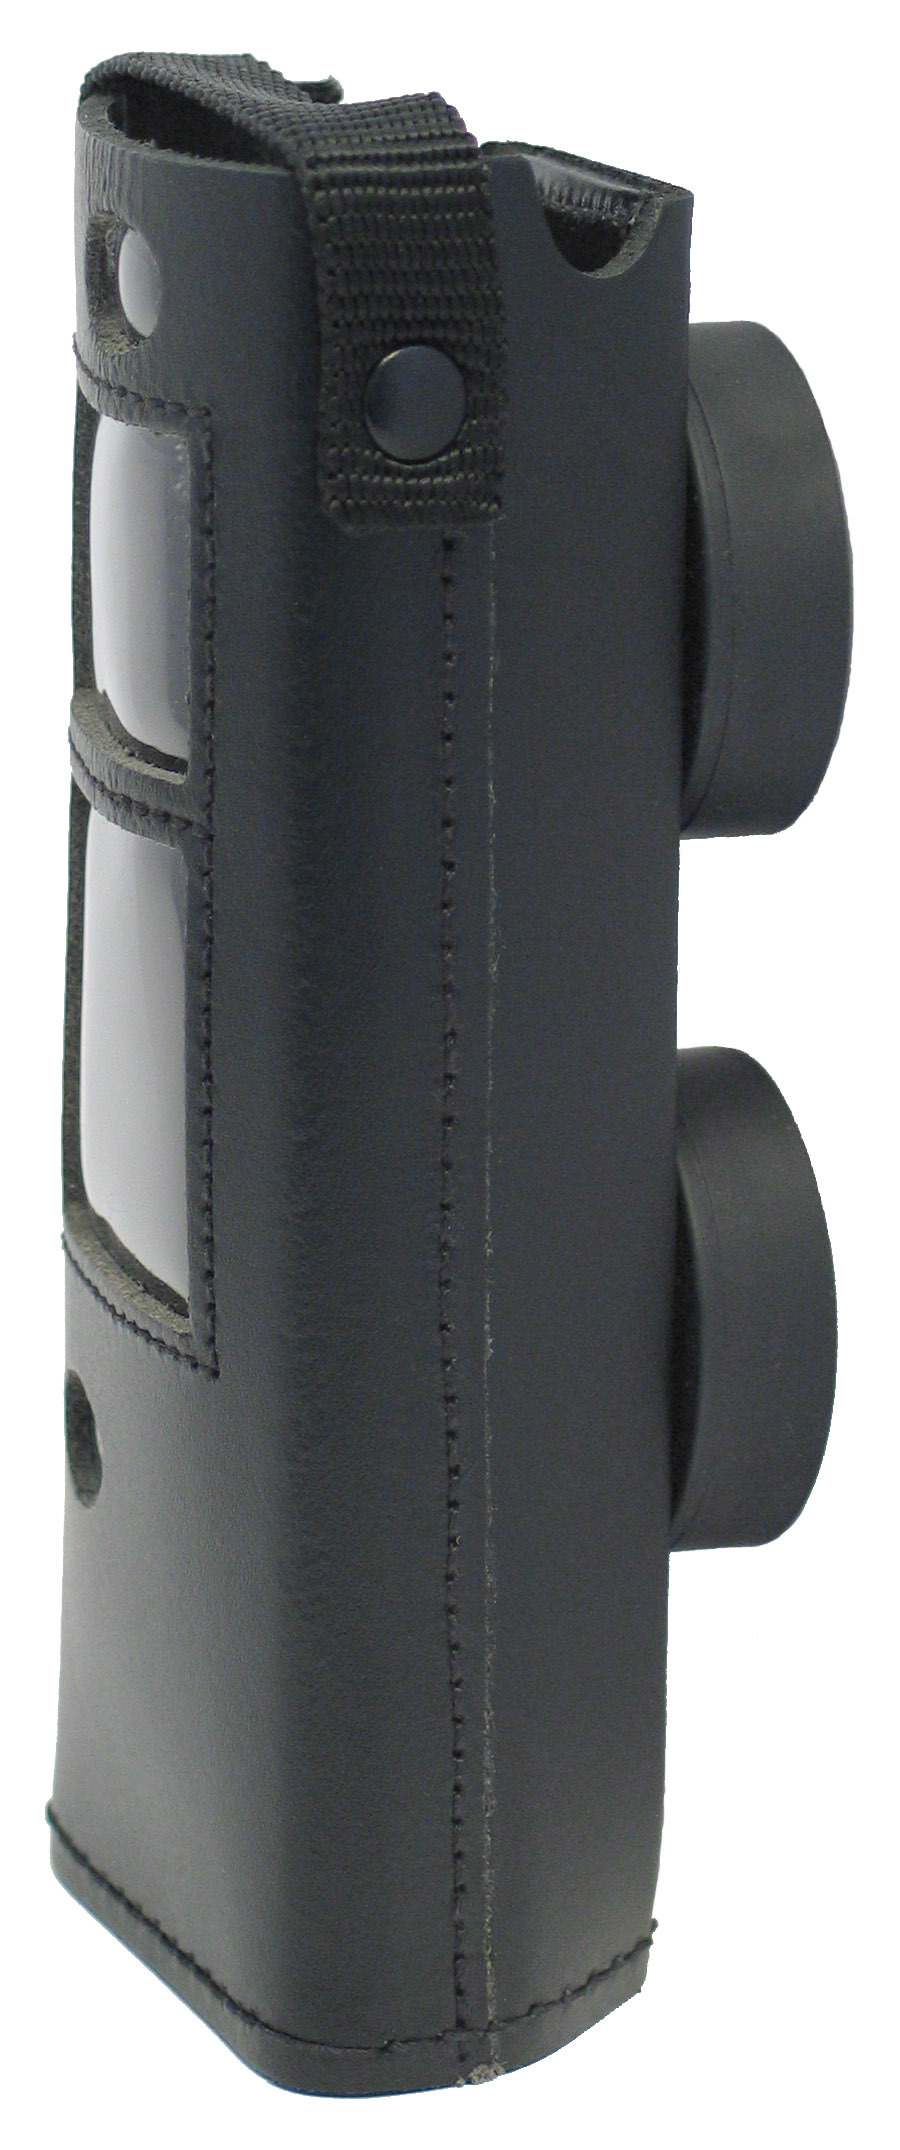 Schutztasche Handmessgeräte mit Magnet
DruckTest 2000, VibraGas, LeckOmiO